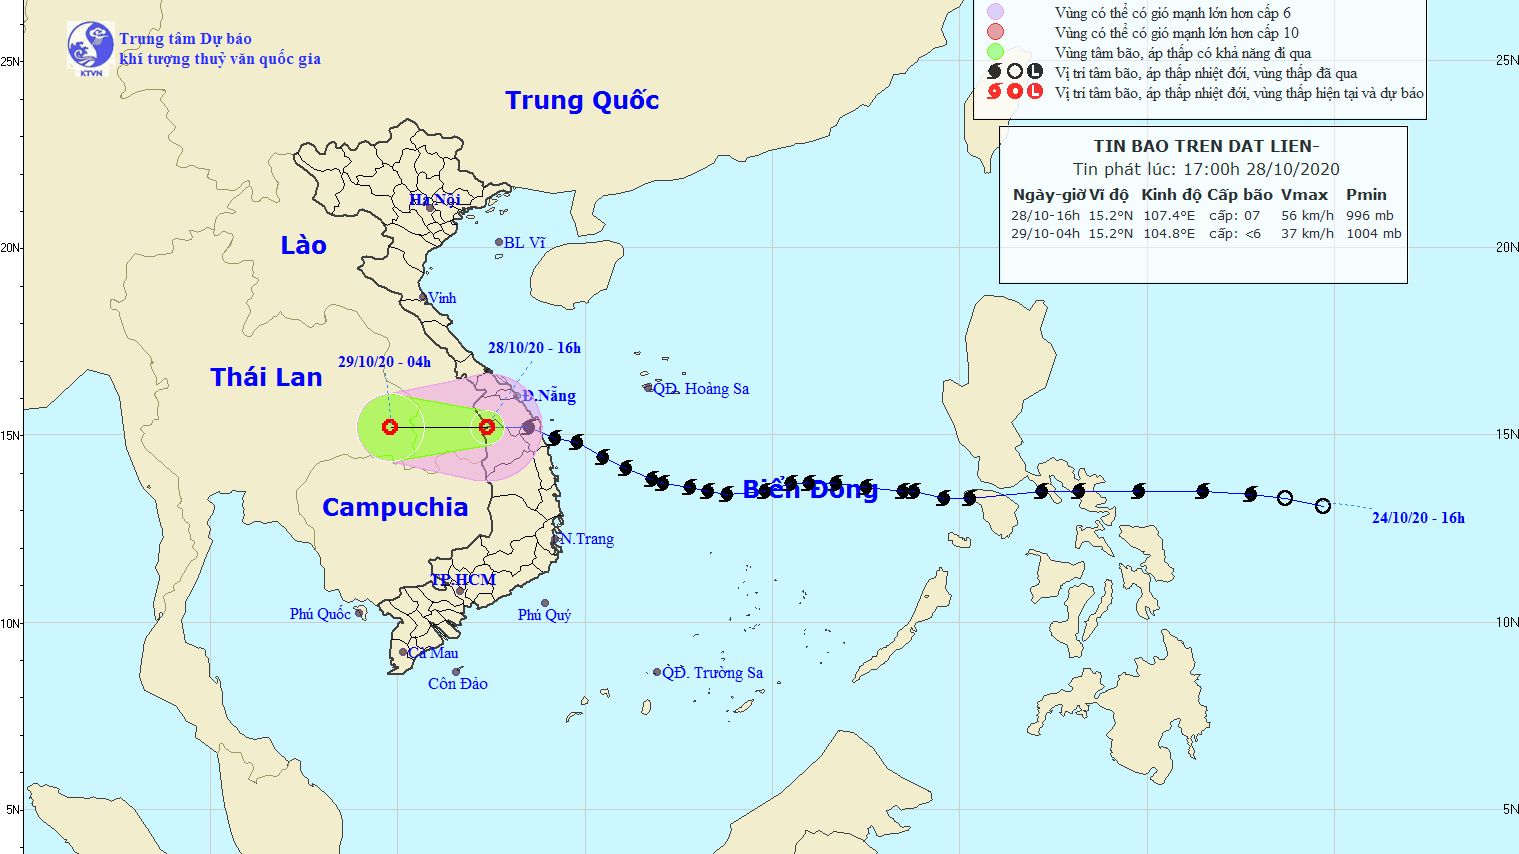 Dự báo thời tiết: Bão số 9 suy yếu thành áp thấp nhiệt đới, khu vực Nghệ An đến Quảng Bình mưa rất to